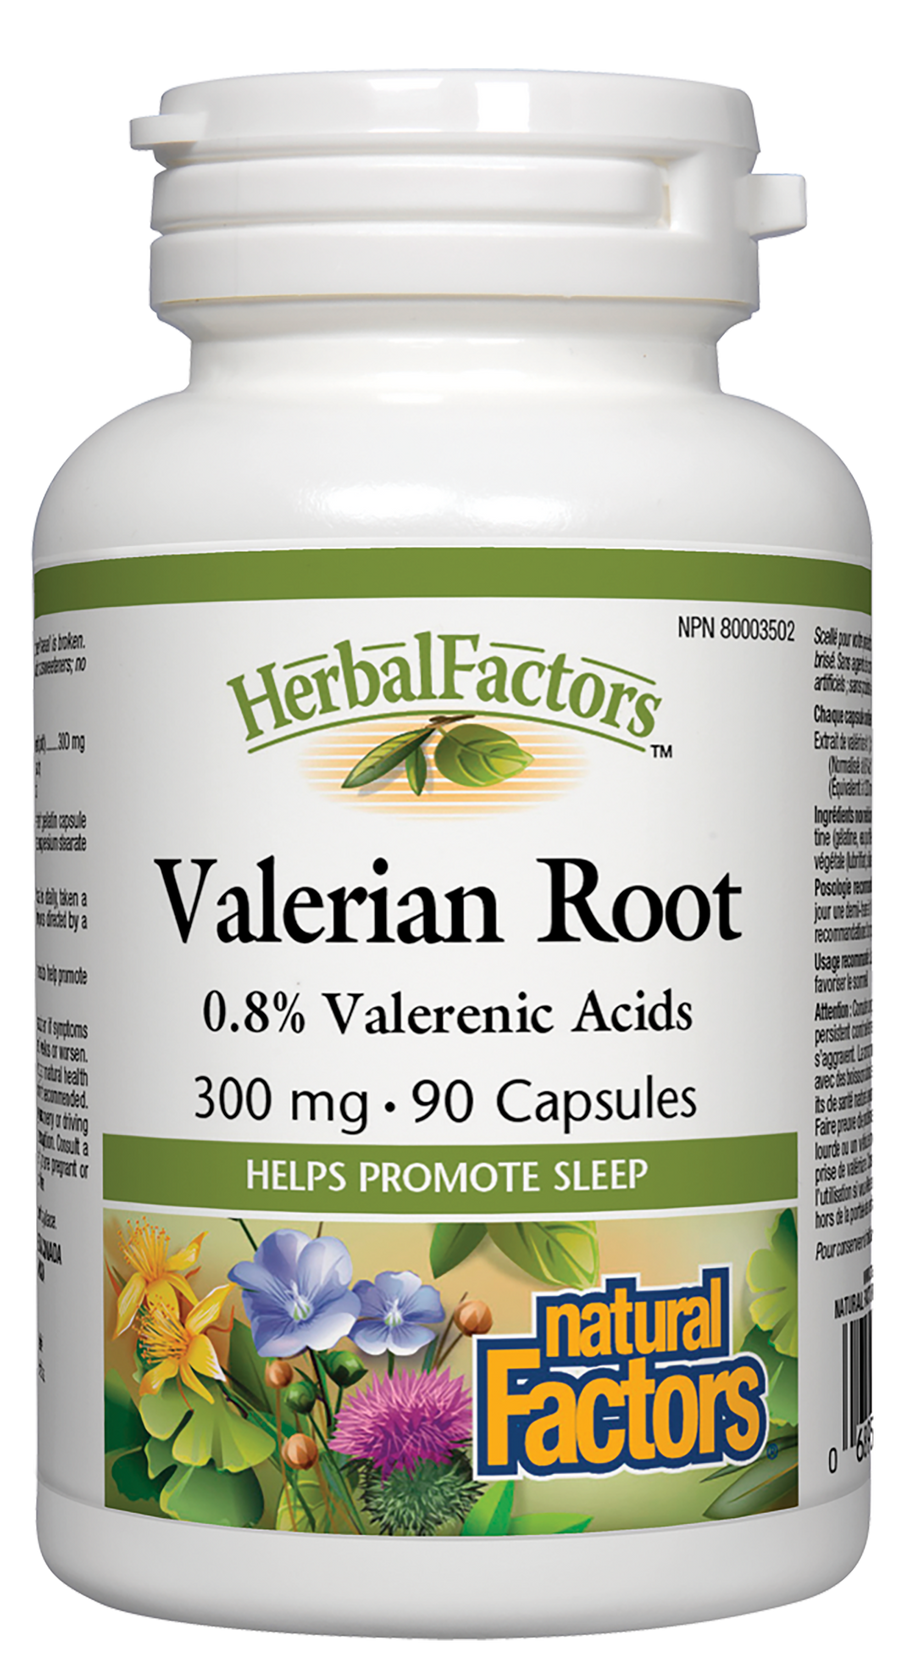 Natural Factors Valerian Root, HerbalFactors 300 mg 90 Capsules